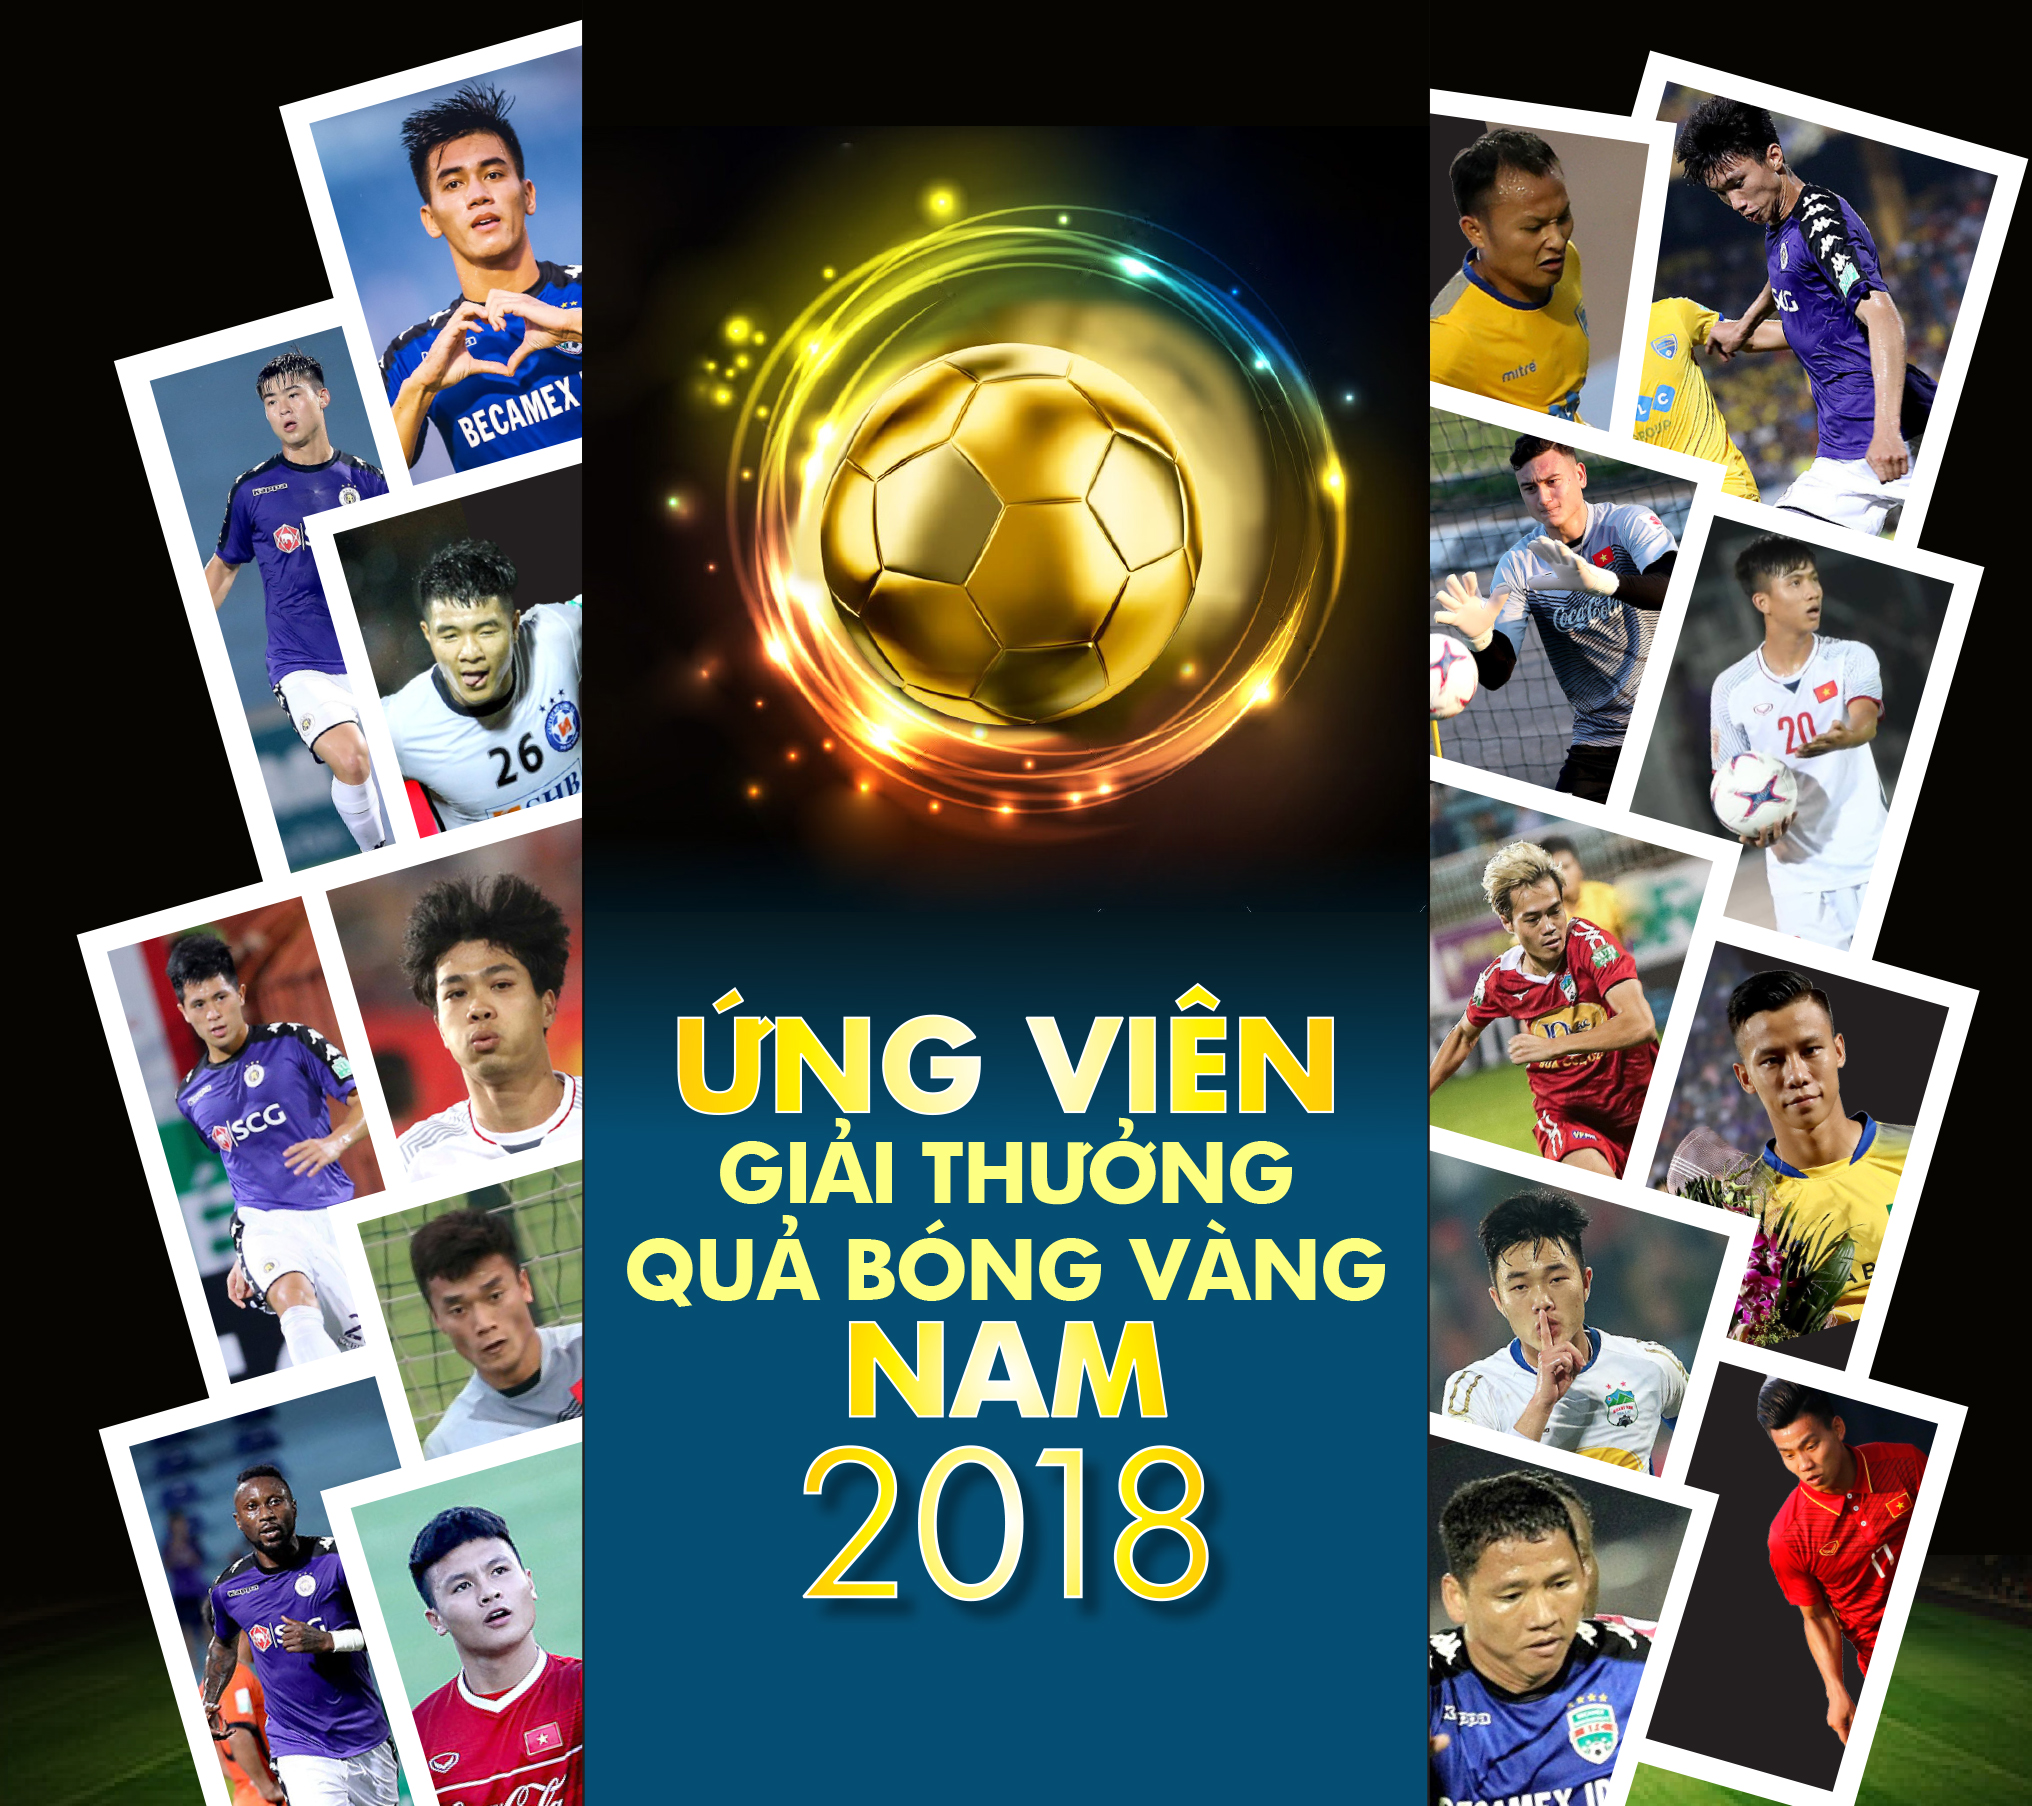 Danh sách ứng viên Giải thưởng Quả bóng vàng nam 2018